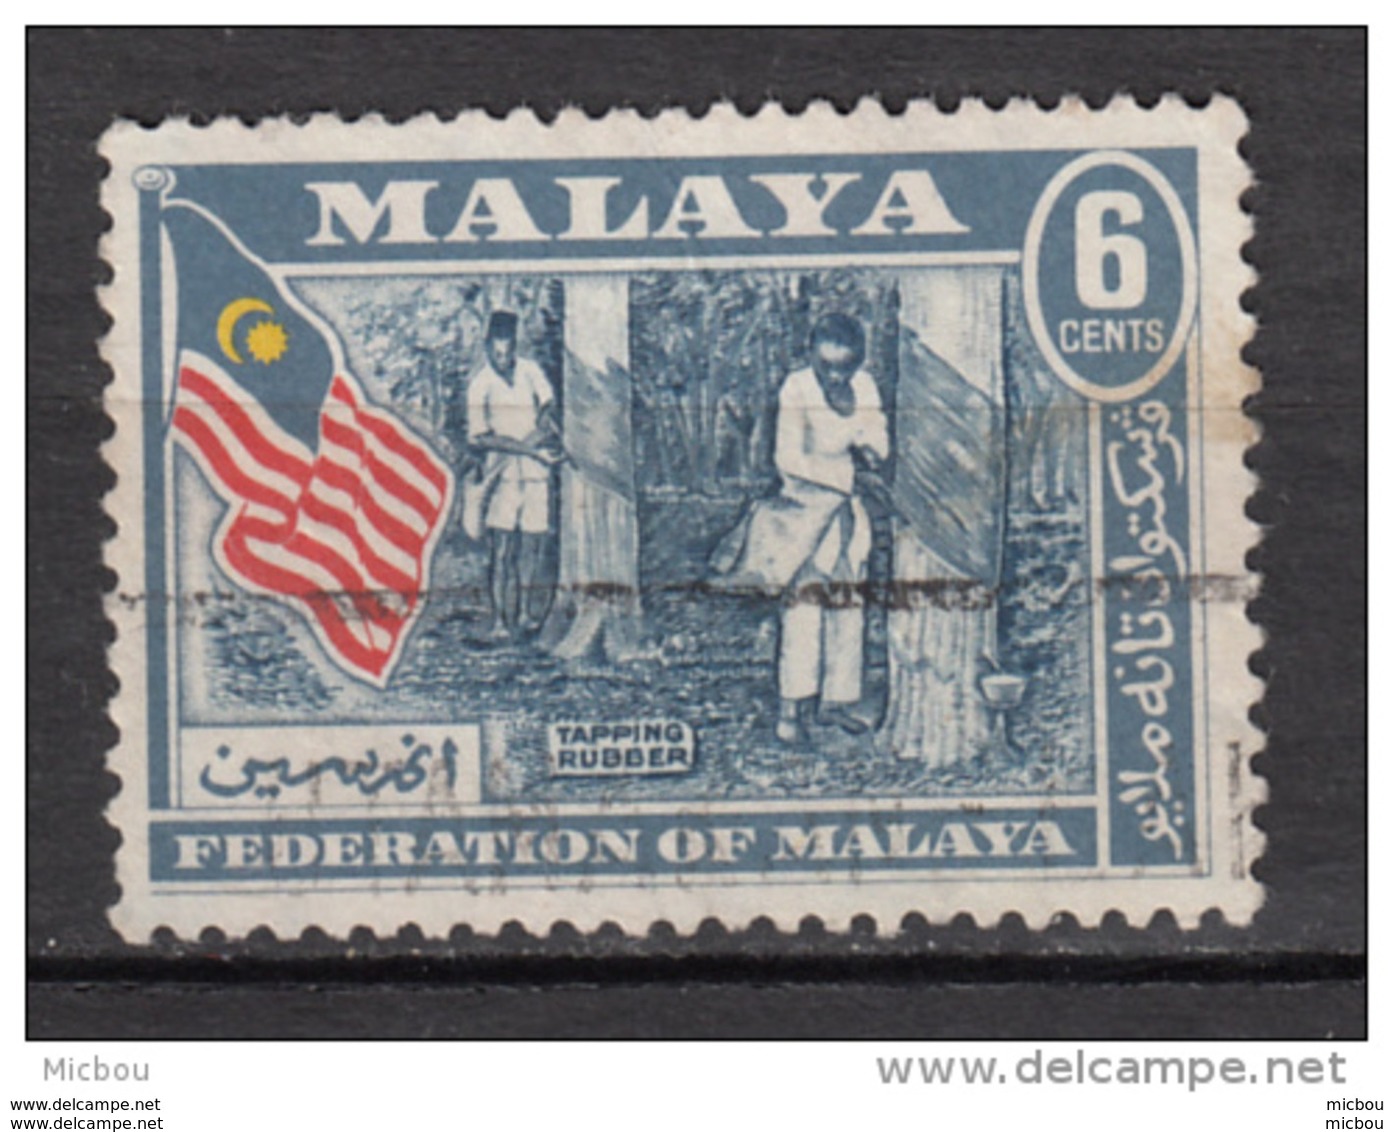 Malaysie, Malaysia, Hevea, Latex, Caoutchouc, Agriculture, Drapeau, Flag, Lune, Moon - Arbres